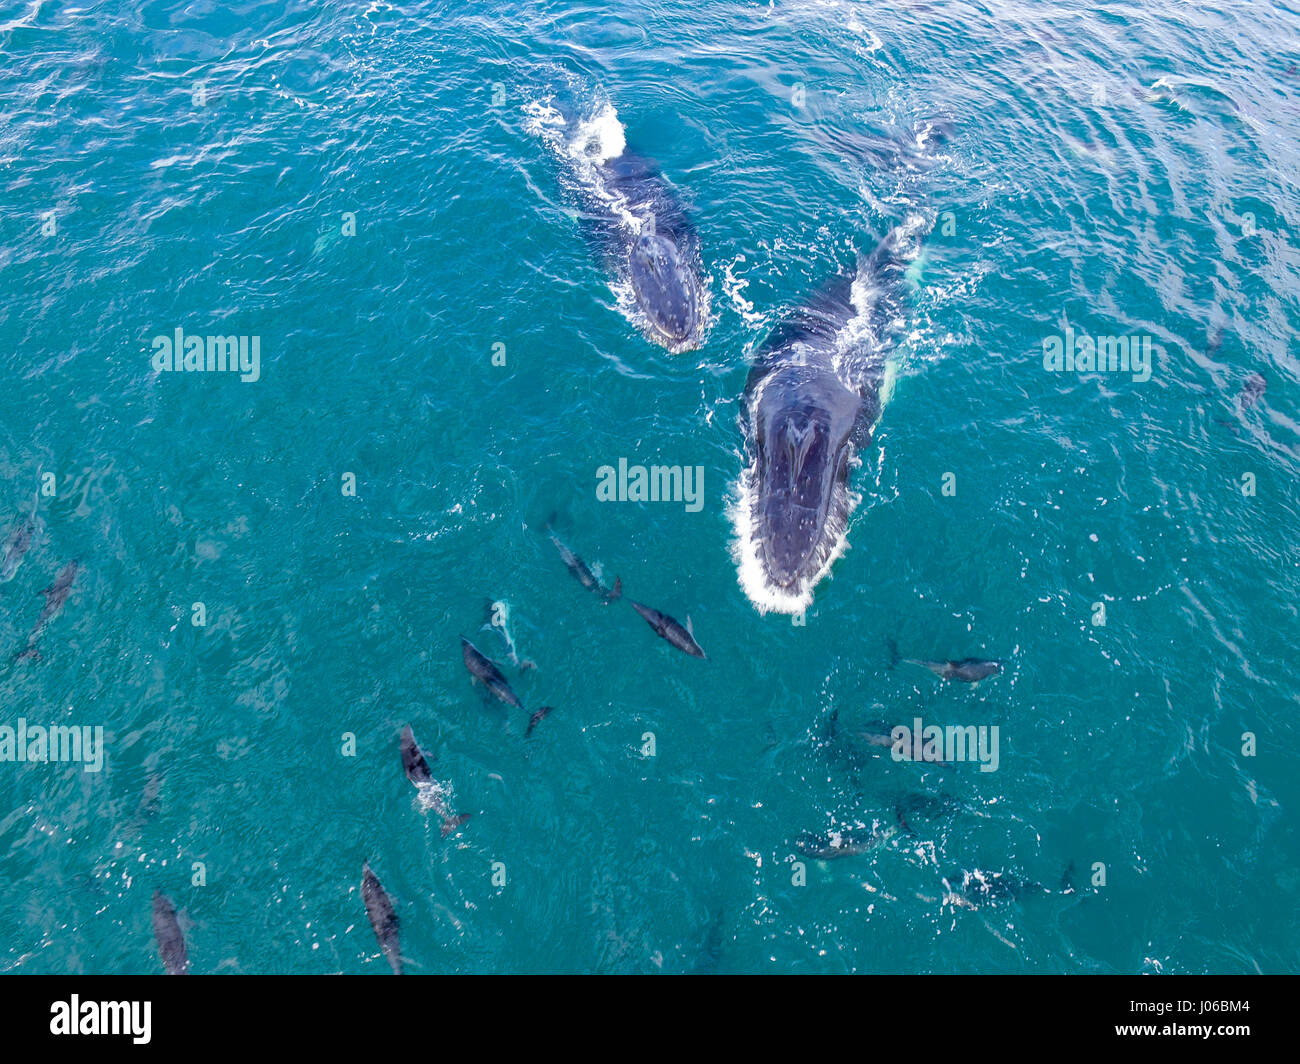 KAIKOURA Halbinsel, Neuseeland: eine Luftaufnahme des Dusky Delphine und Buckelwale. ATEMBERAUBENDE Aufnahmen von frechen Delfine mit zwei 40-Fuß lange Buckelwale wurden gefangen genommen. Die herrlichen Bilder zeigen des super Pod von mehr als-hundert-und-fünfzig dusky Delphine unterbrechen die beiden Wale, wie sie ihren Weg zu den wärmeren Gewässern zu züchten gemacht. Die Bilder zeigen die Delphine setzen auf eine Leistung für eine Gruppe von fassungslos Touristen auf eine Whale-watching Ausflug mit dem Boot. Nicht um die sportliche Delphine heraus erfolgen, durchgeführt die Buckelwale eine Reihe von synchronisierten Wendungen Stockfoto